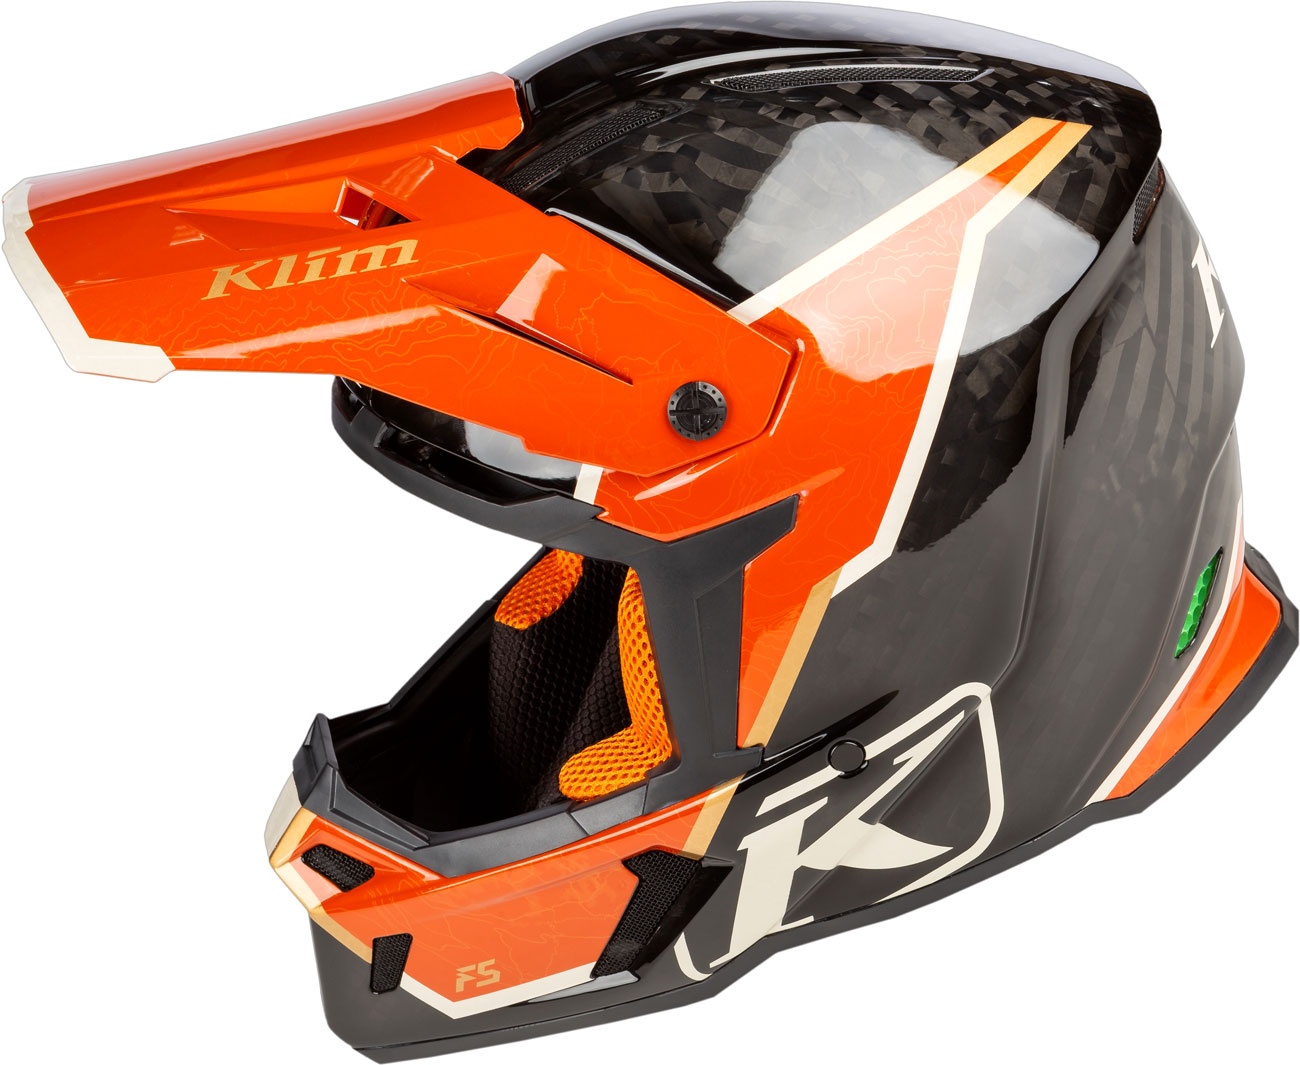 Klim F5 Koroyd Topo, Motocrosshelm - Schwarz/Orange - L